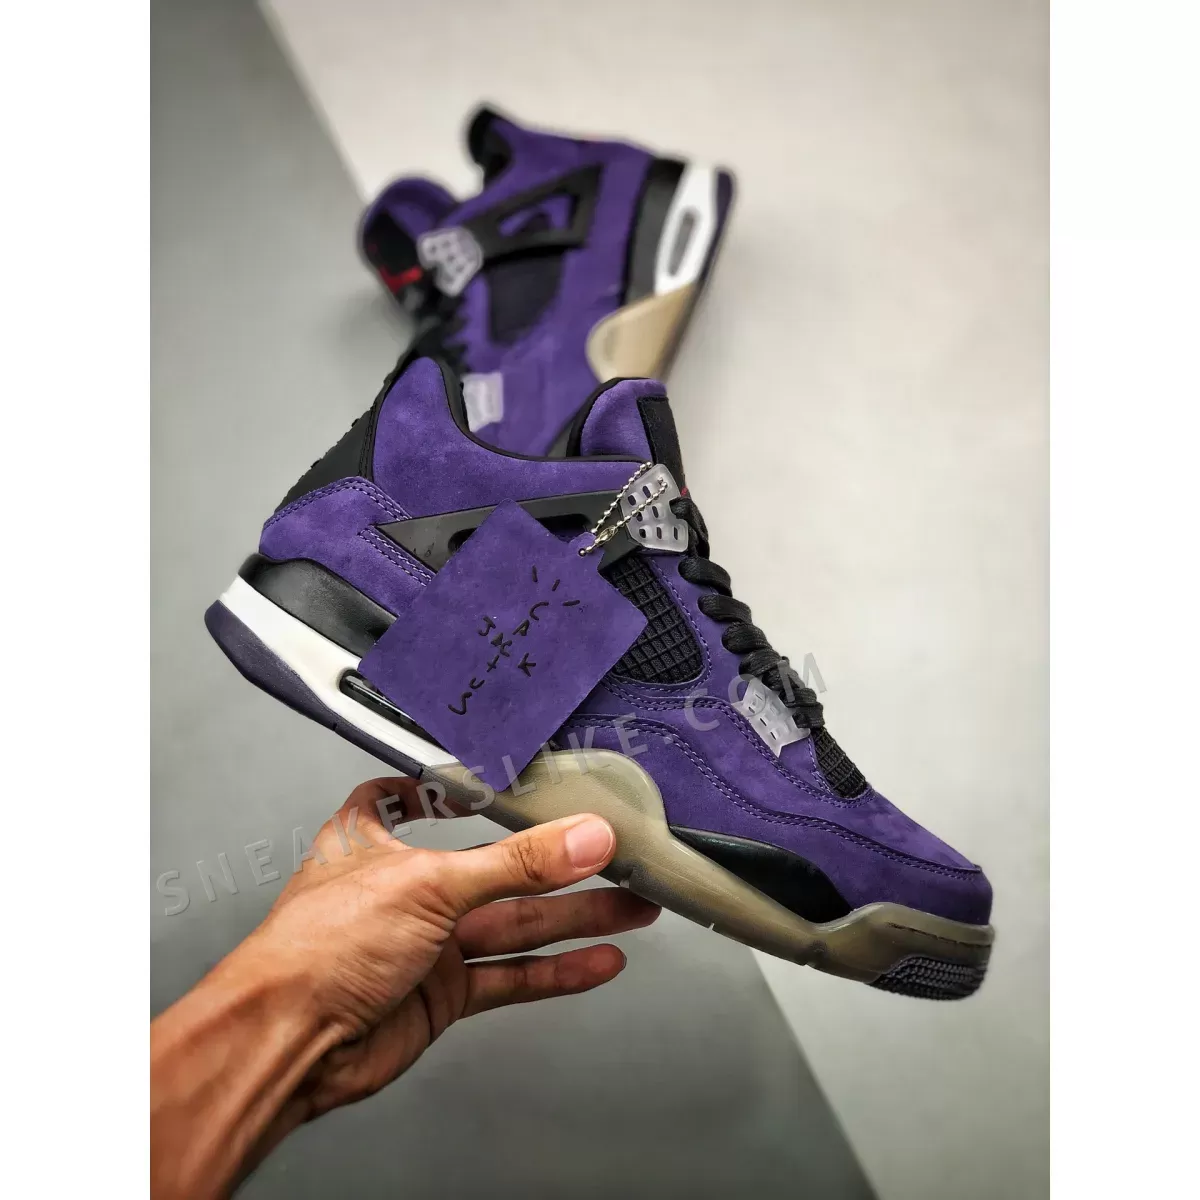 Travis Scott x Air Jordan 4 'Purple Suede' / purple suede jordan 4